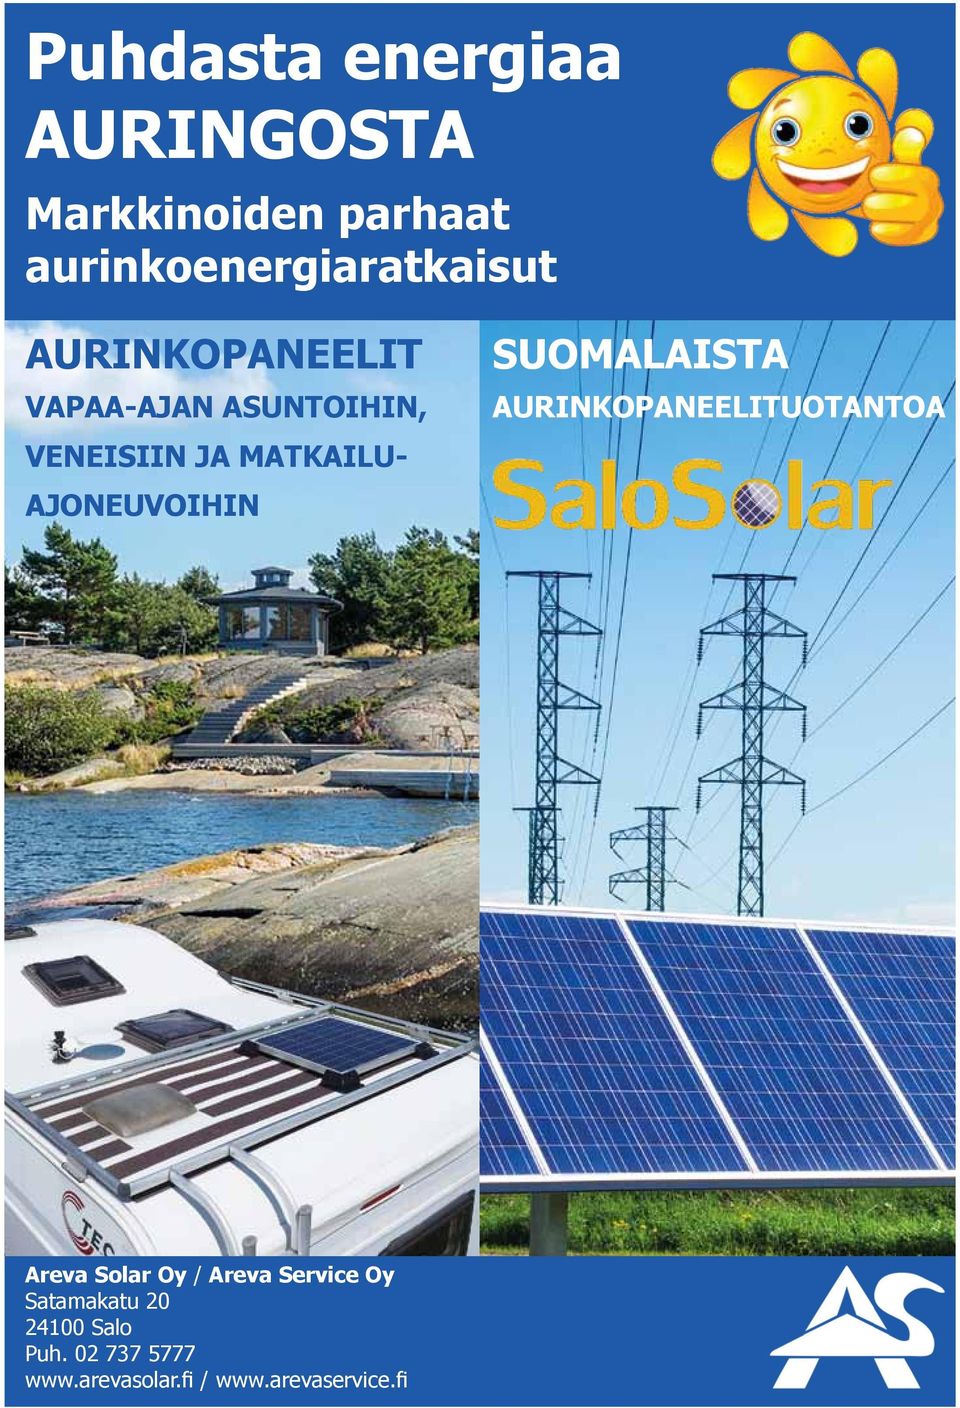 SUOMALAISTA AURINKOPANEELITUOTANTOA Areva Solar Oy / Areva Service Oy